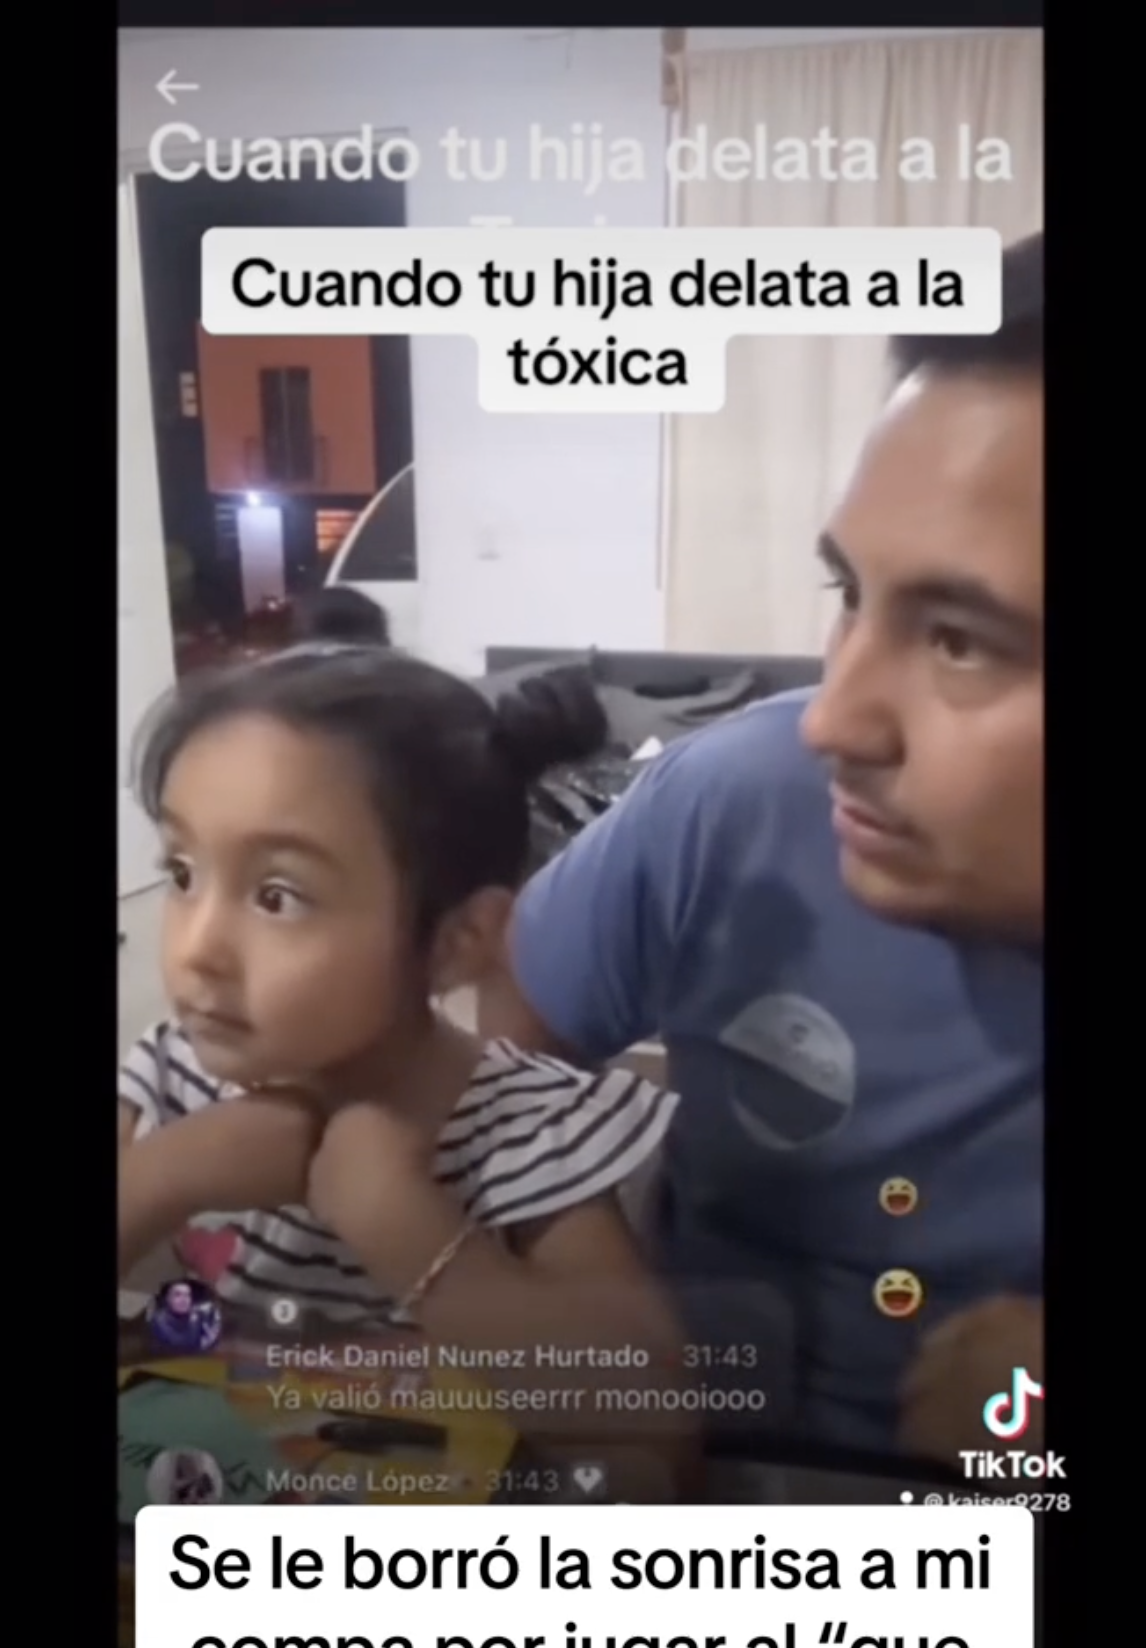 Das Vater-Tochter-Duo aus Mexiko ist darauf zu sehen, wie es die Mutter des Mädchens ansieht, die neben ihnen und von der Kamera weg sitzt. | Source: tiktok.com/@kaiser927